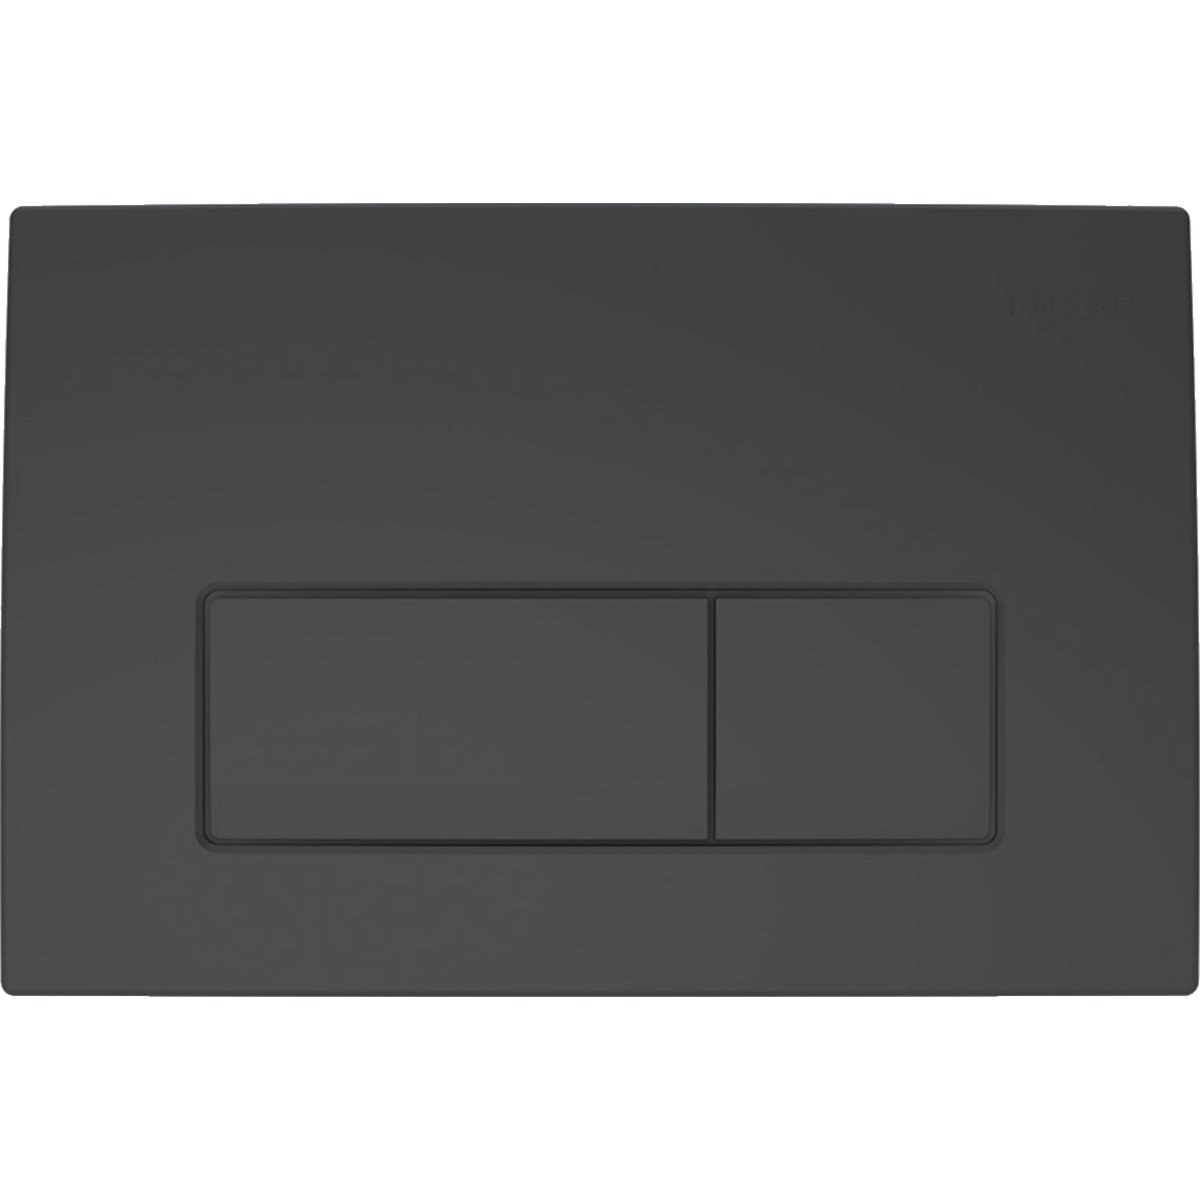 Смывающая клавиша DELTA50 для двойного смыва, пластик, черный матовый